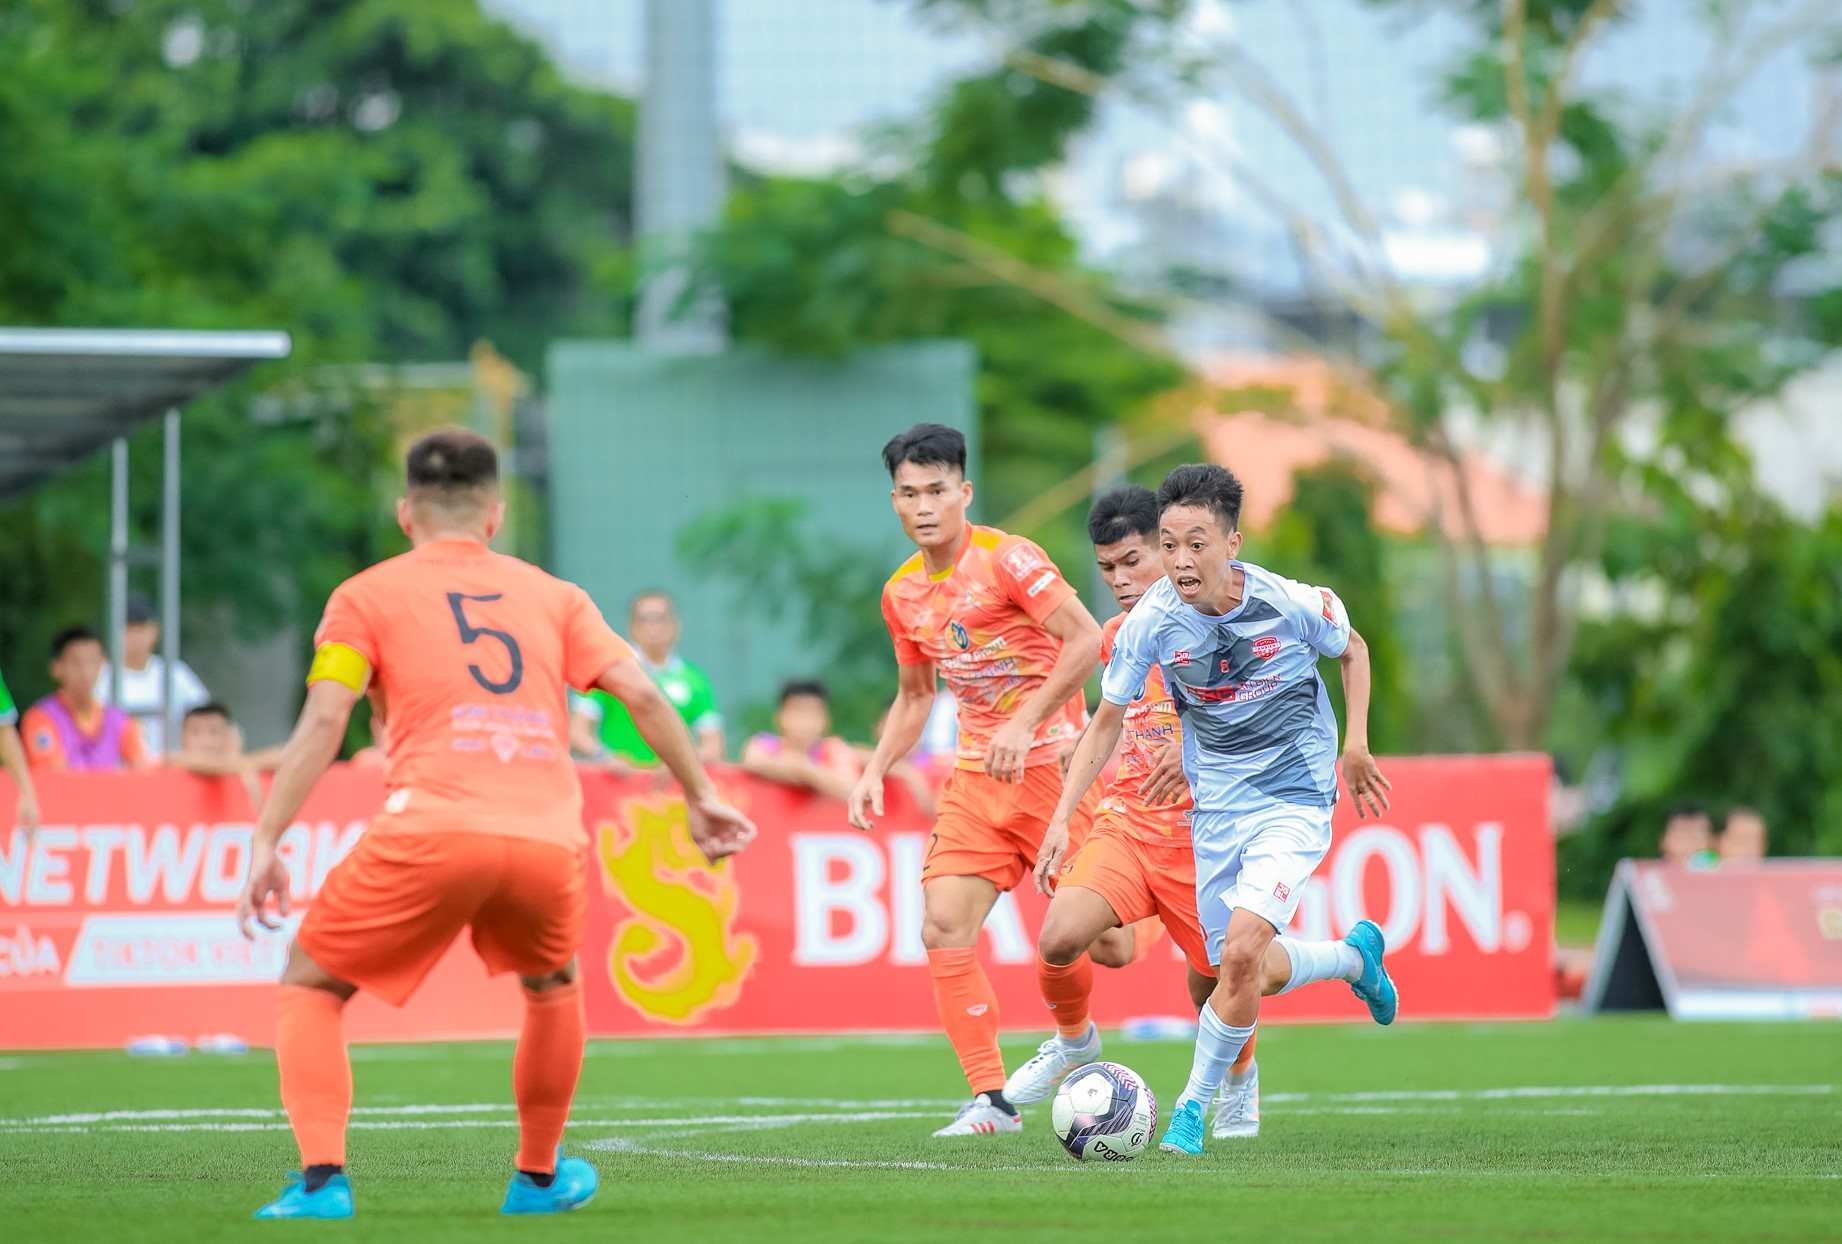 “Chung kết sớm” An Biên FC và Nghiêm Phạm Holding ngay trong ngày giải đấu khởi tranh. Ảnh: Đình Thảo